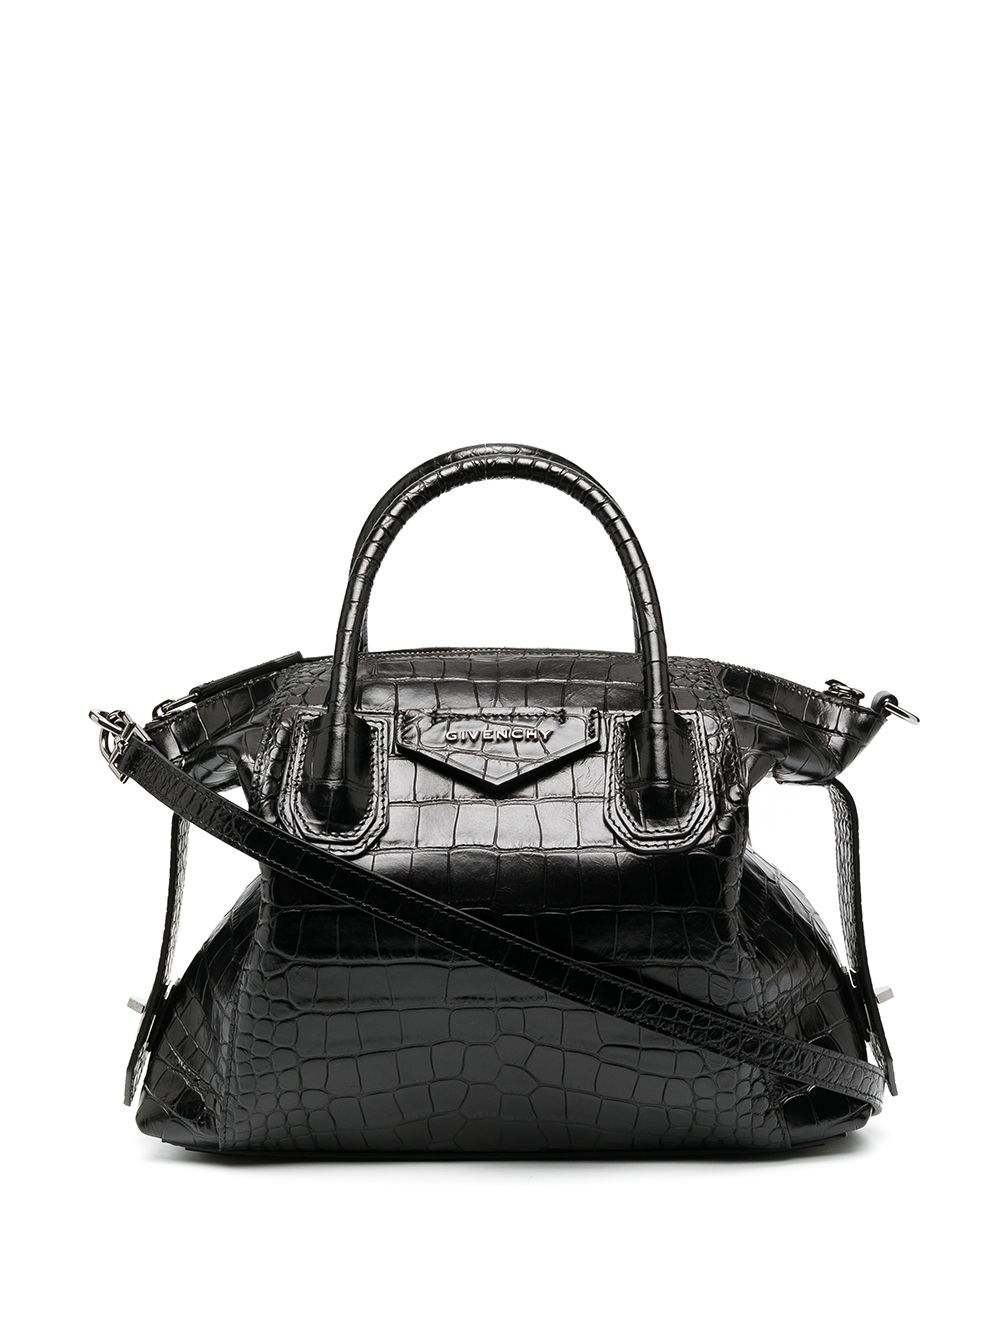 фото Givenchy сумка-тоут с тиснением под крокодила